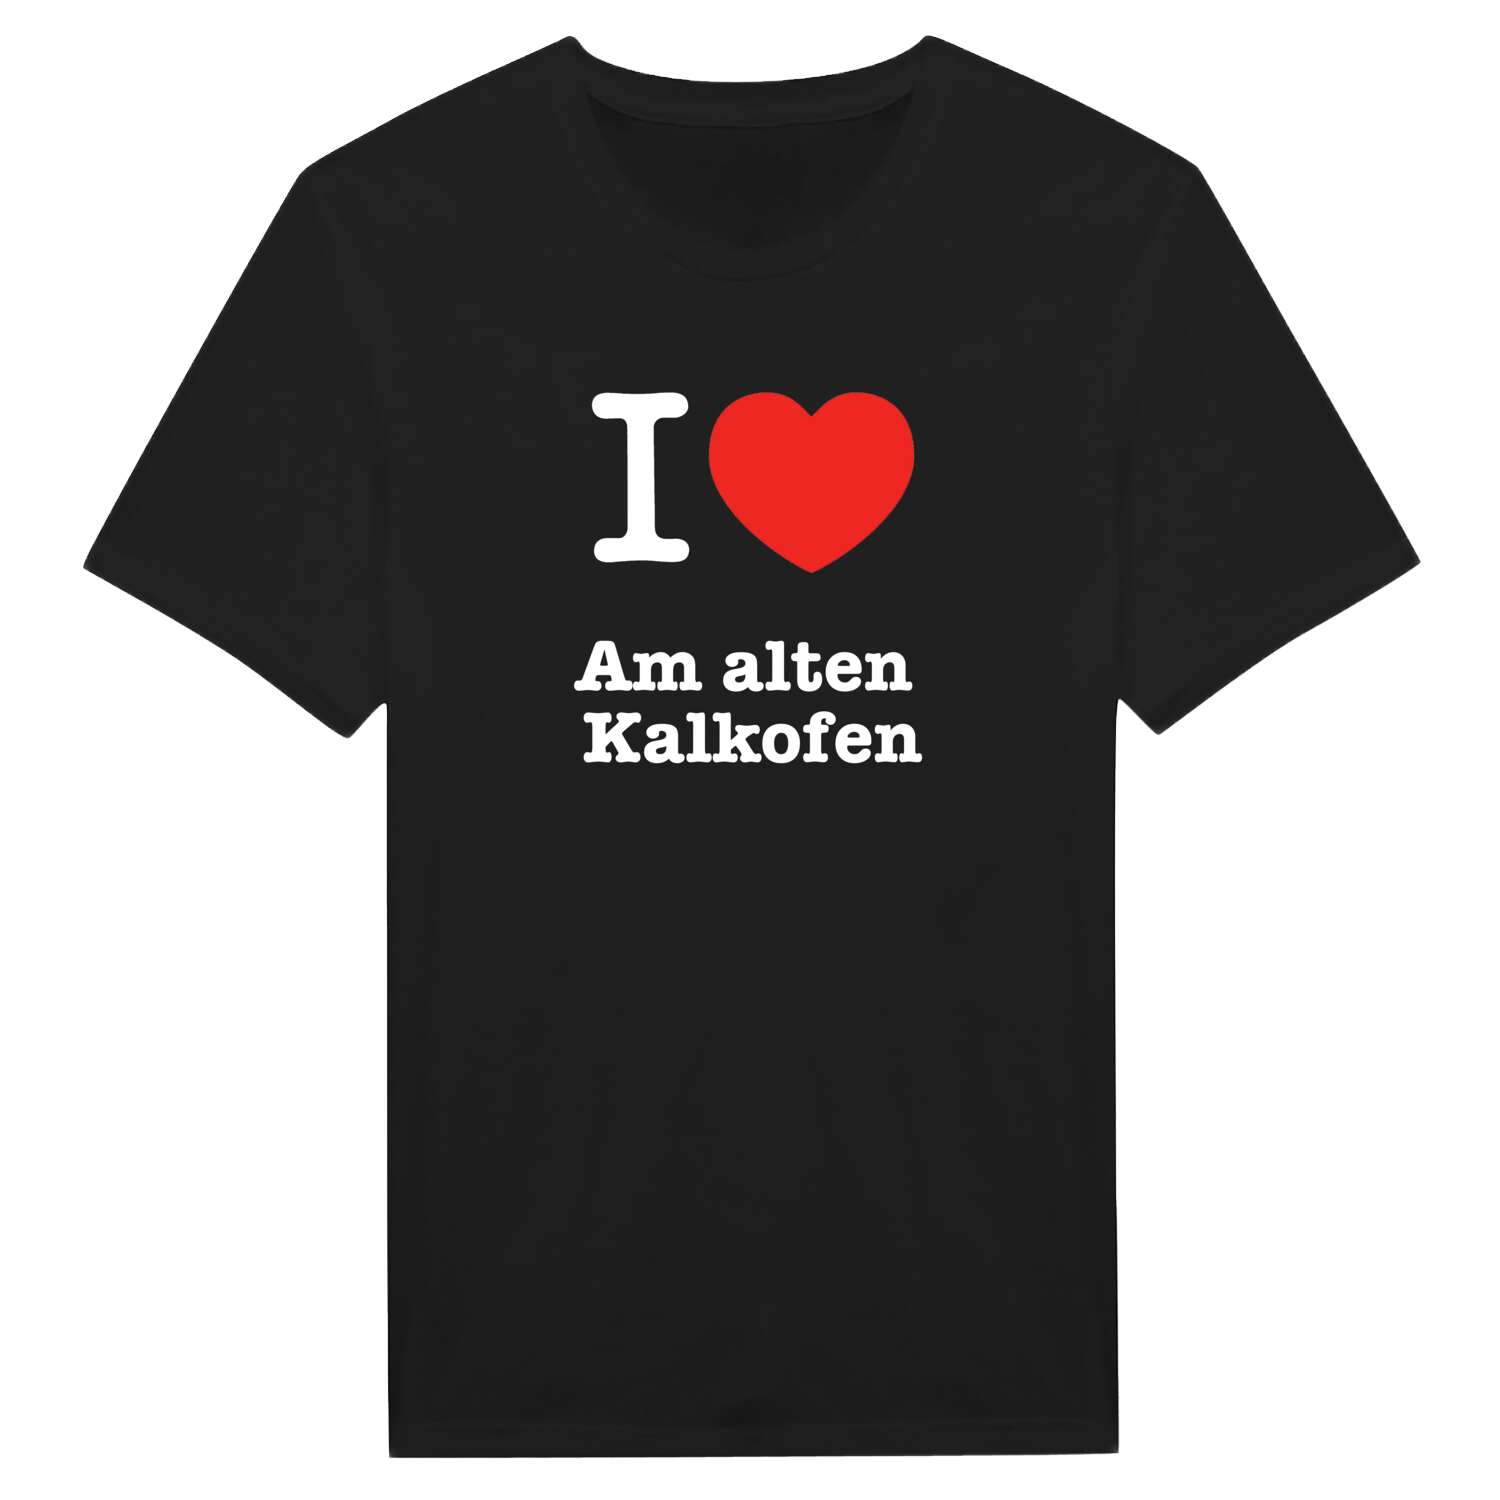 Am alten Kalkofen T-Shirt »I love«